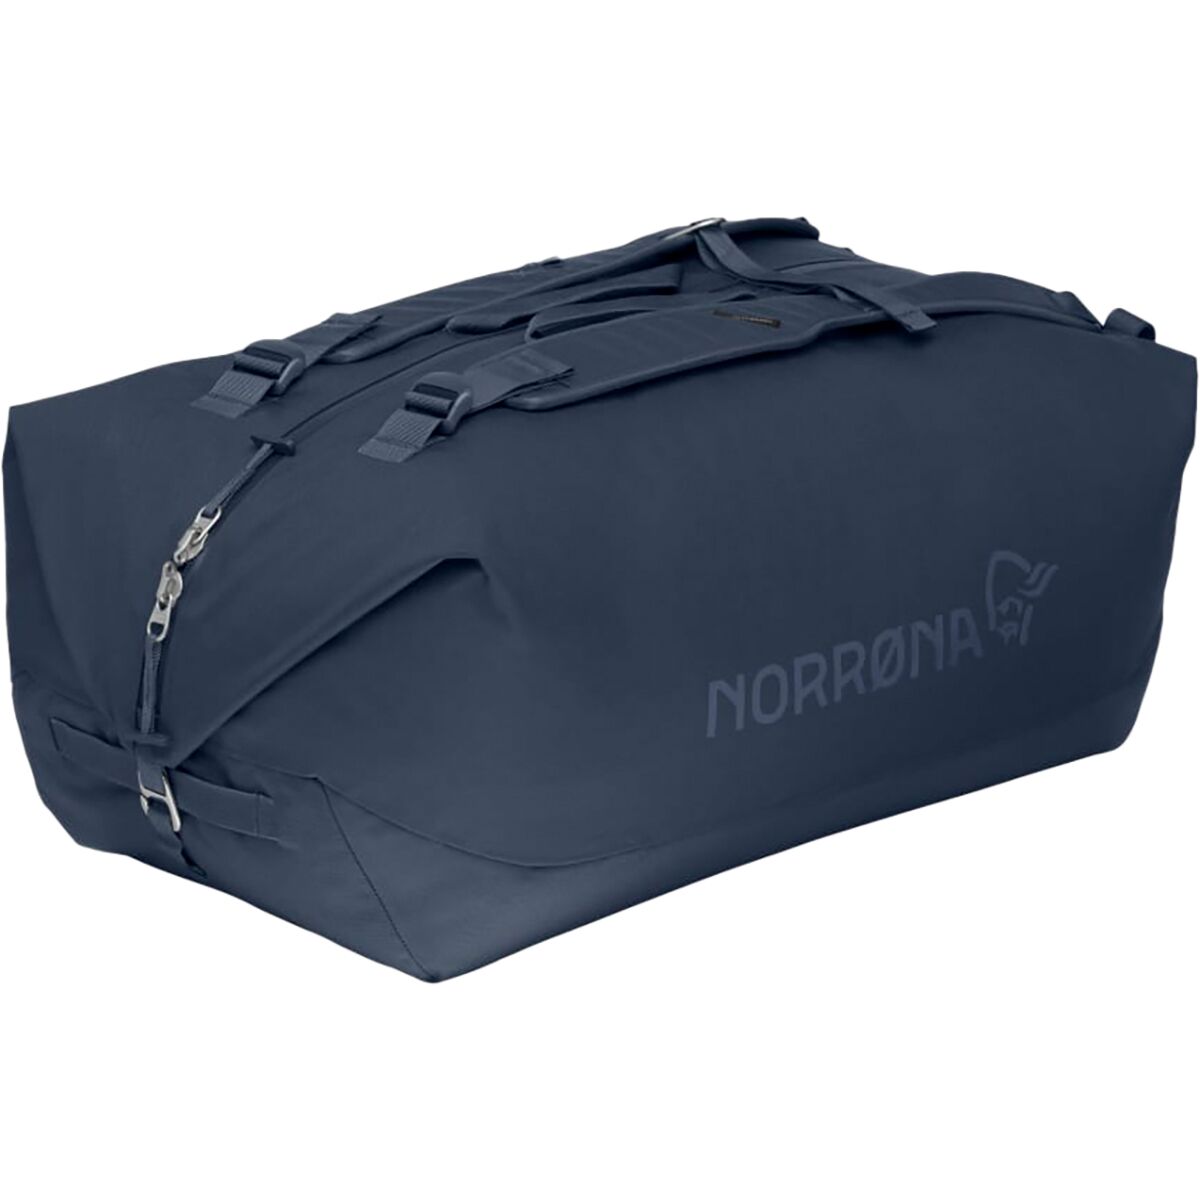 Norrona 50L Duffel Bag